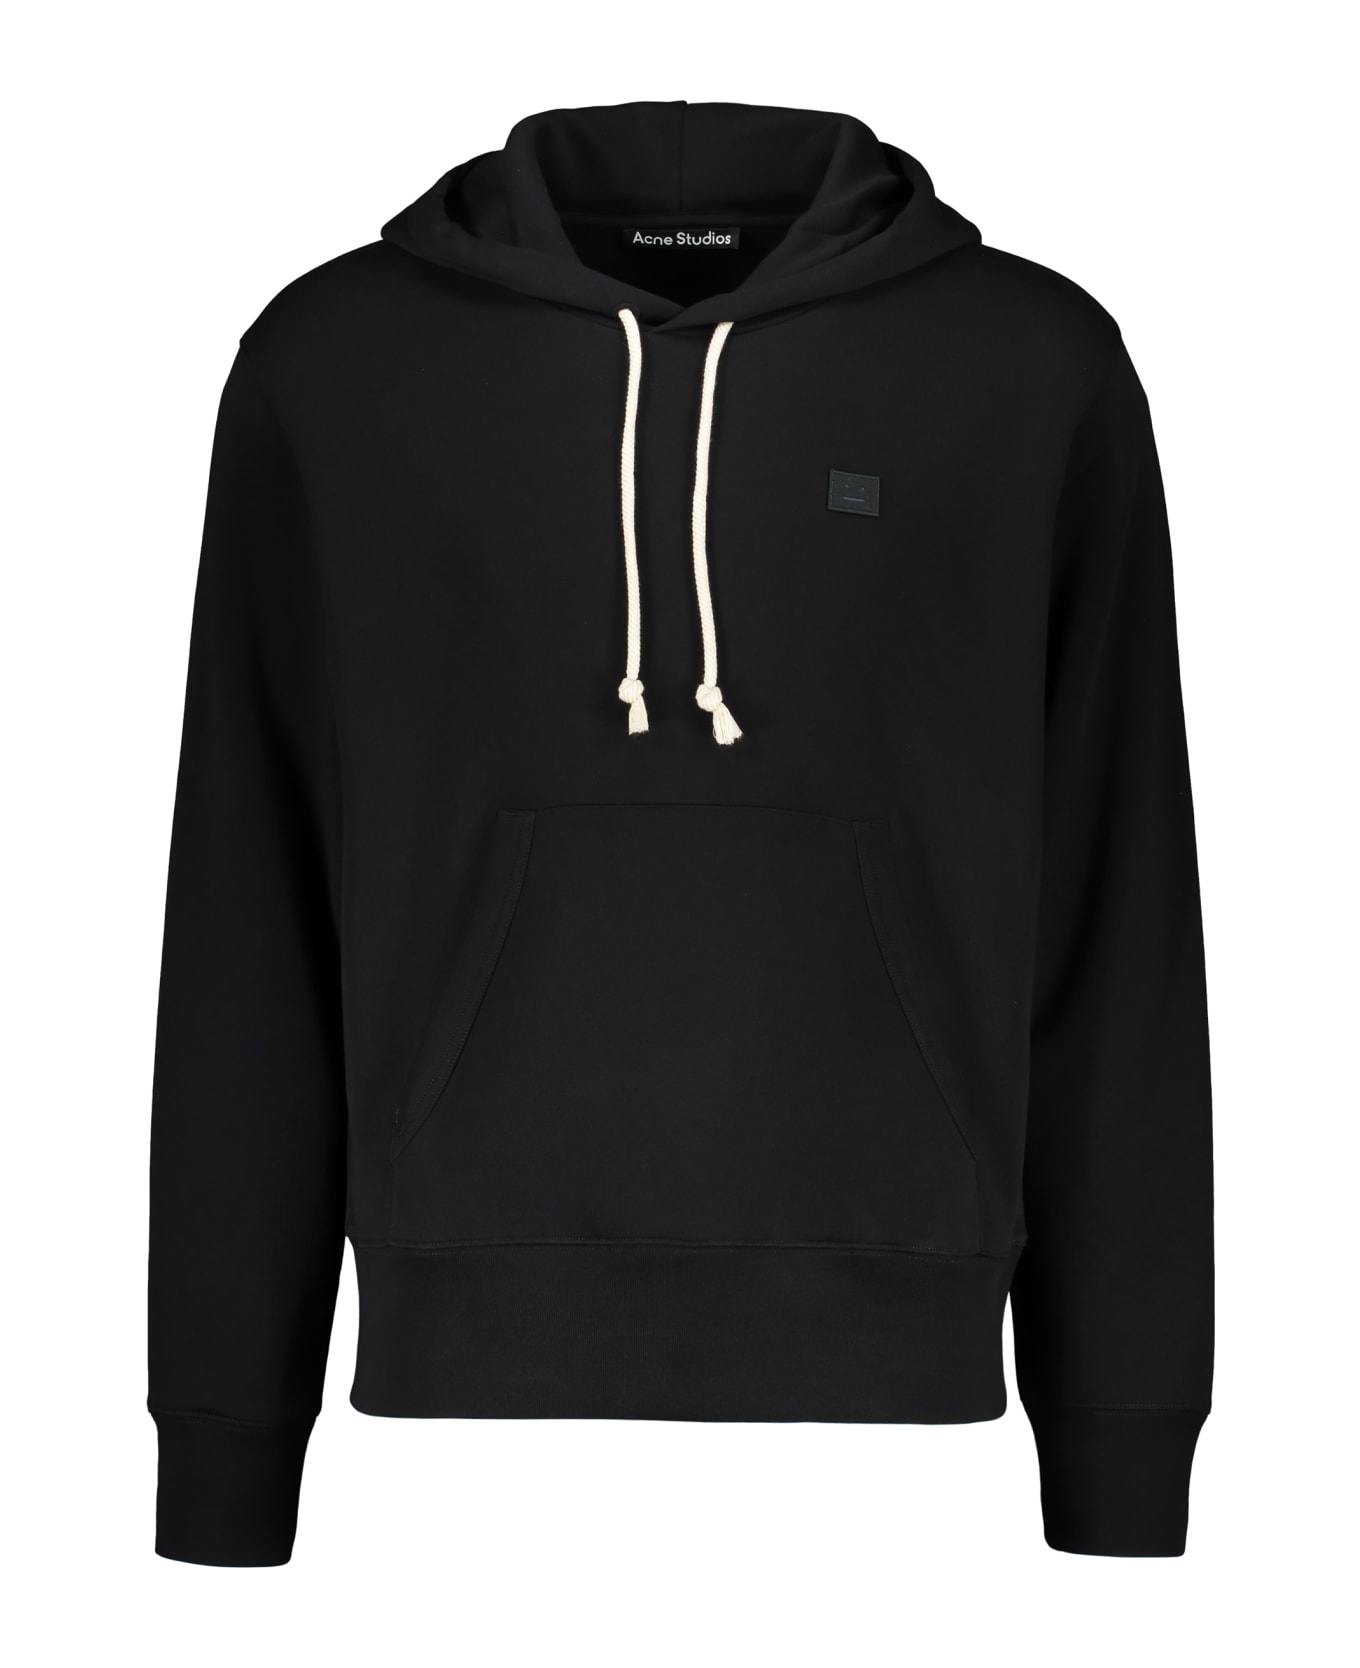 Acne Studios Hooded Sweatshirt - black フリース